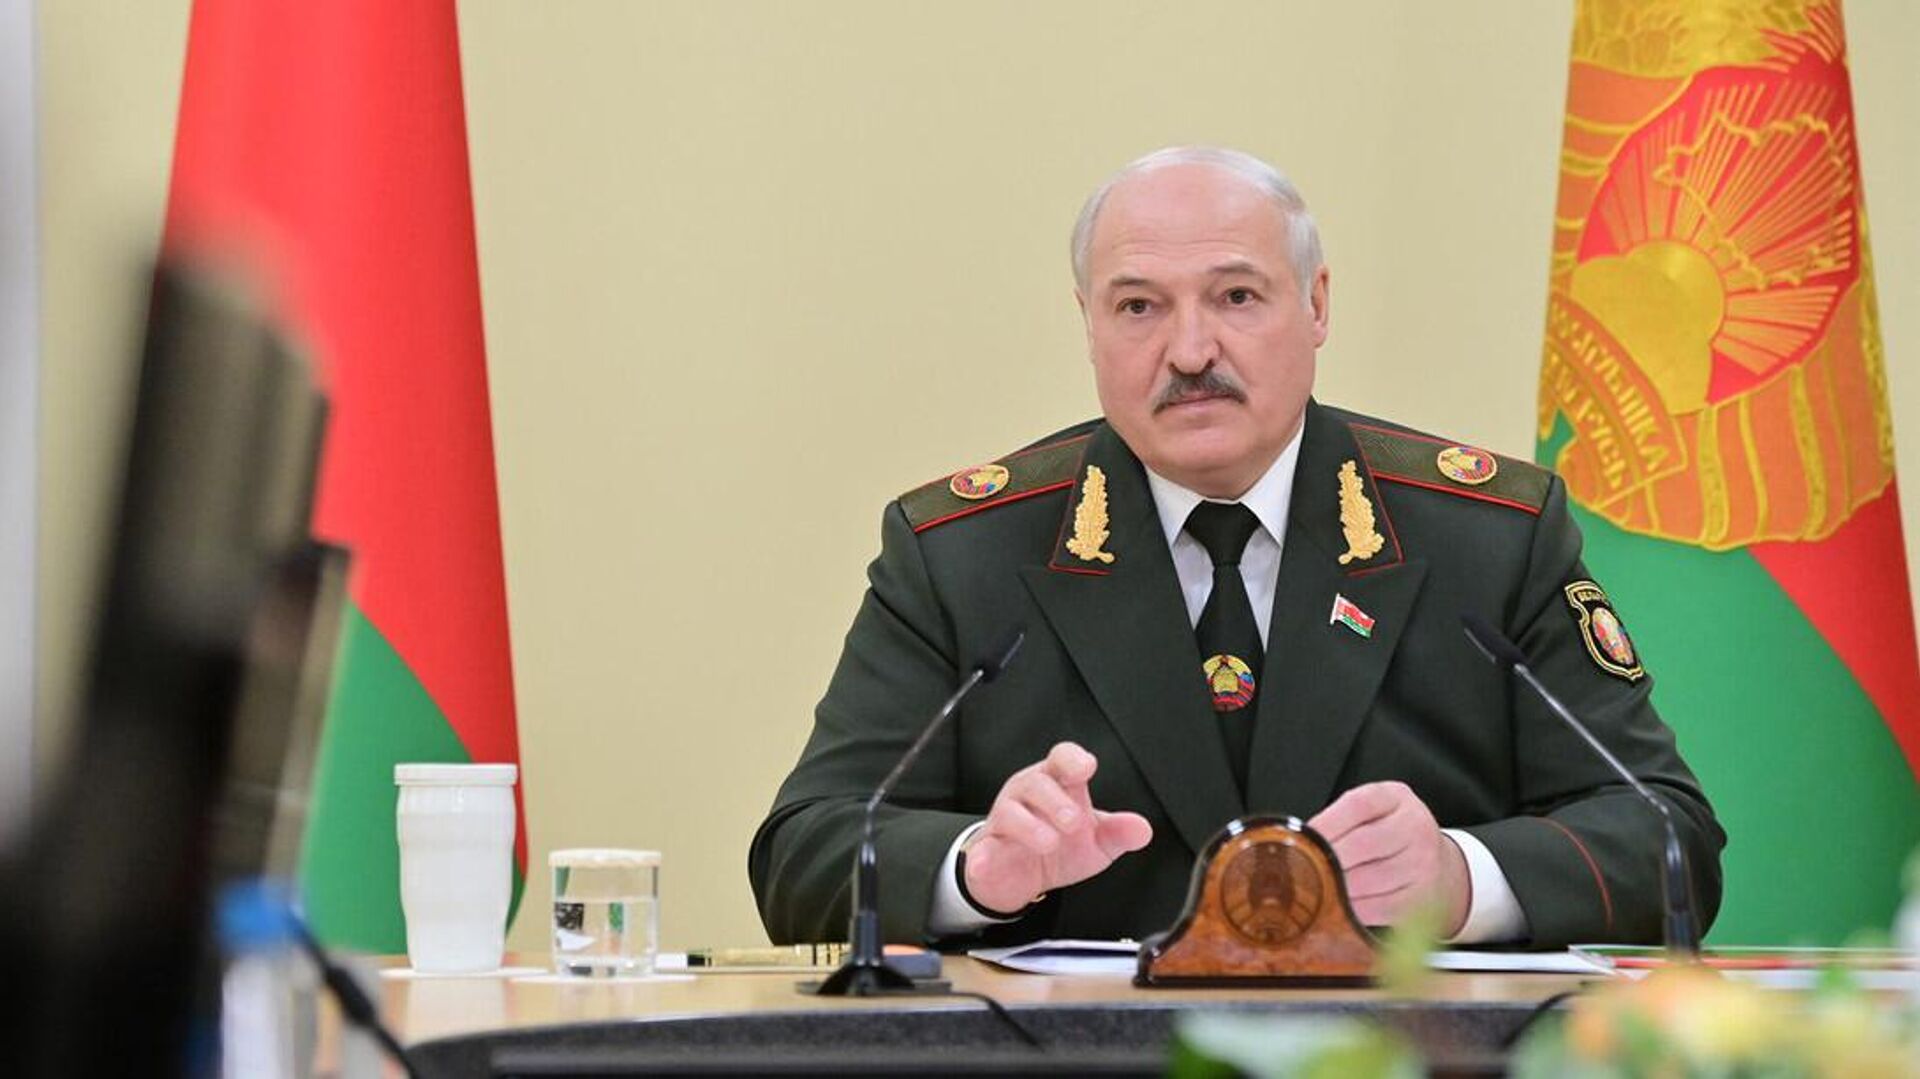 Глава государства Александр Лукашенко 26 мая посетил Министерство обороны Беларуси, где провел совещание по вопросам обеспечения военной безопасности.  - Sputnik Беларусь, 1920, 26.05.2022